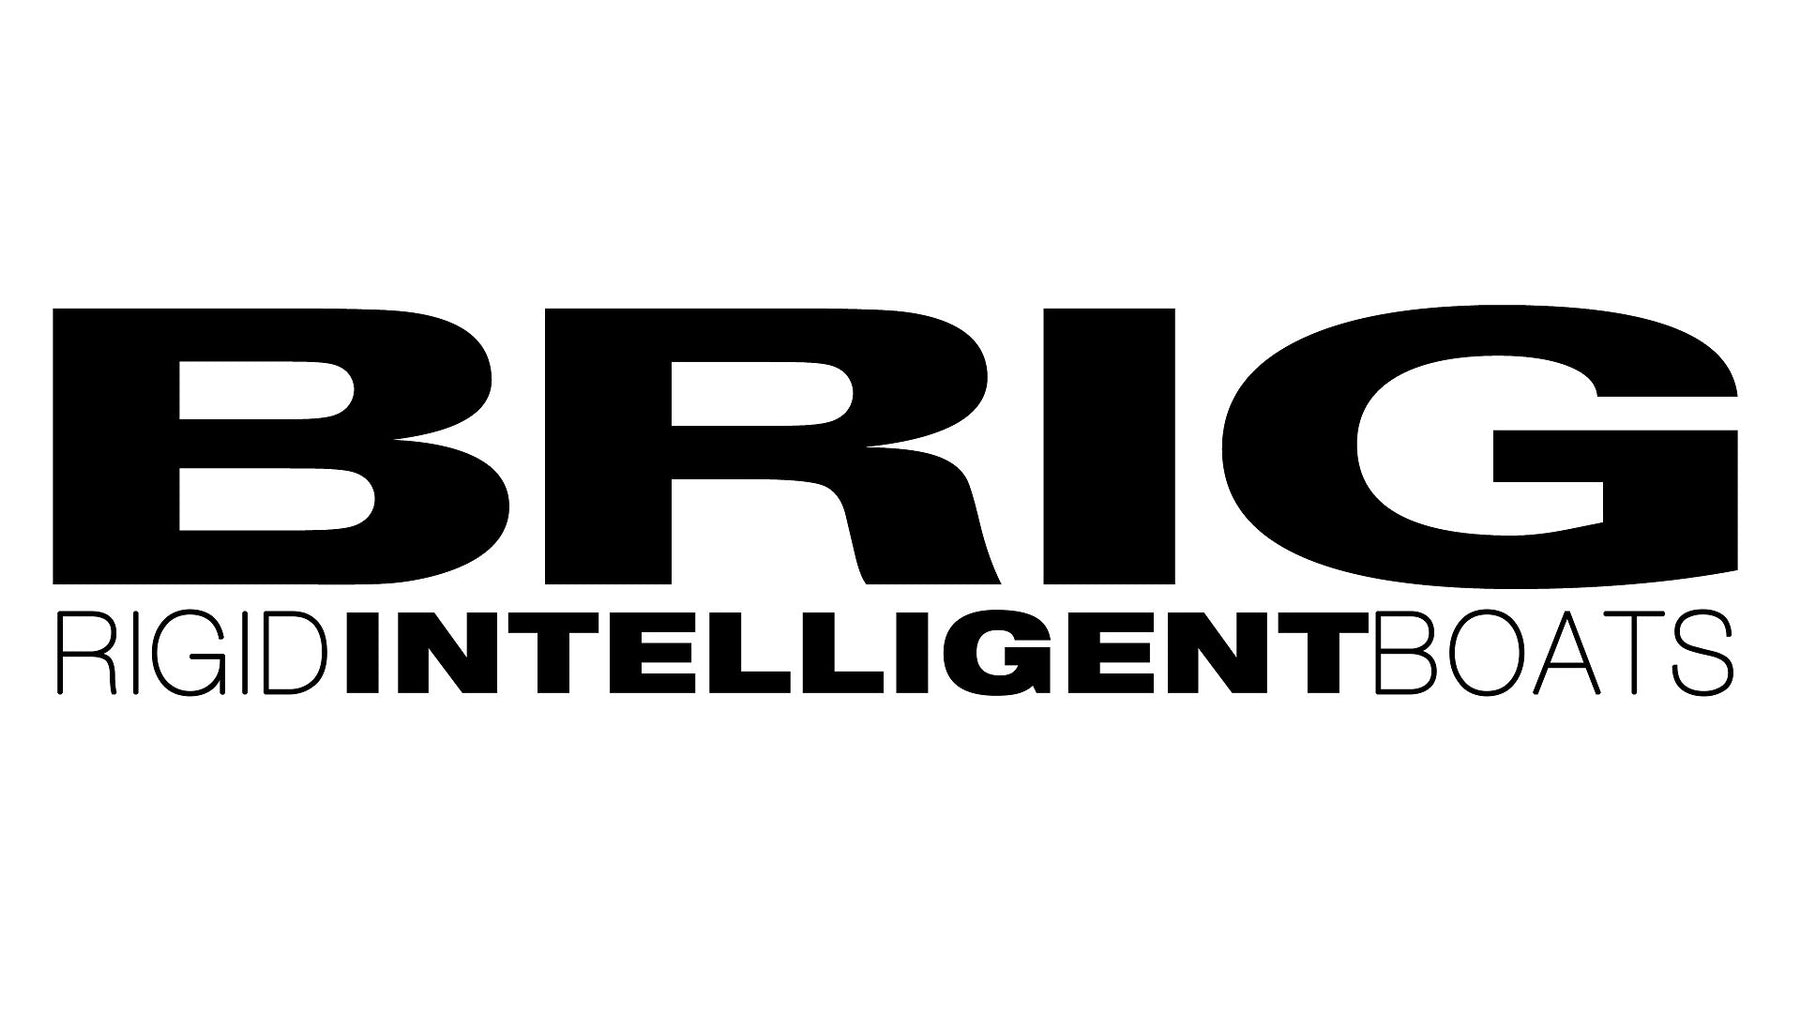 Focus constructeur : BRIG, l'ingénierie aéronautique au service du nautisme